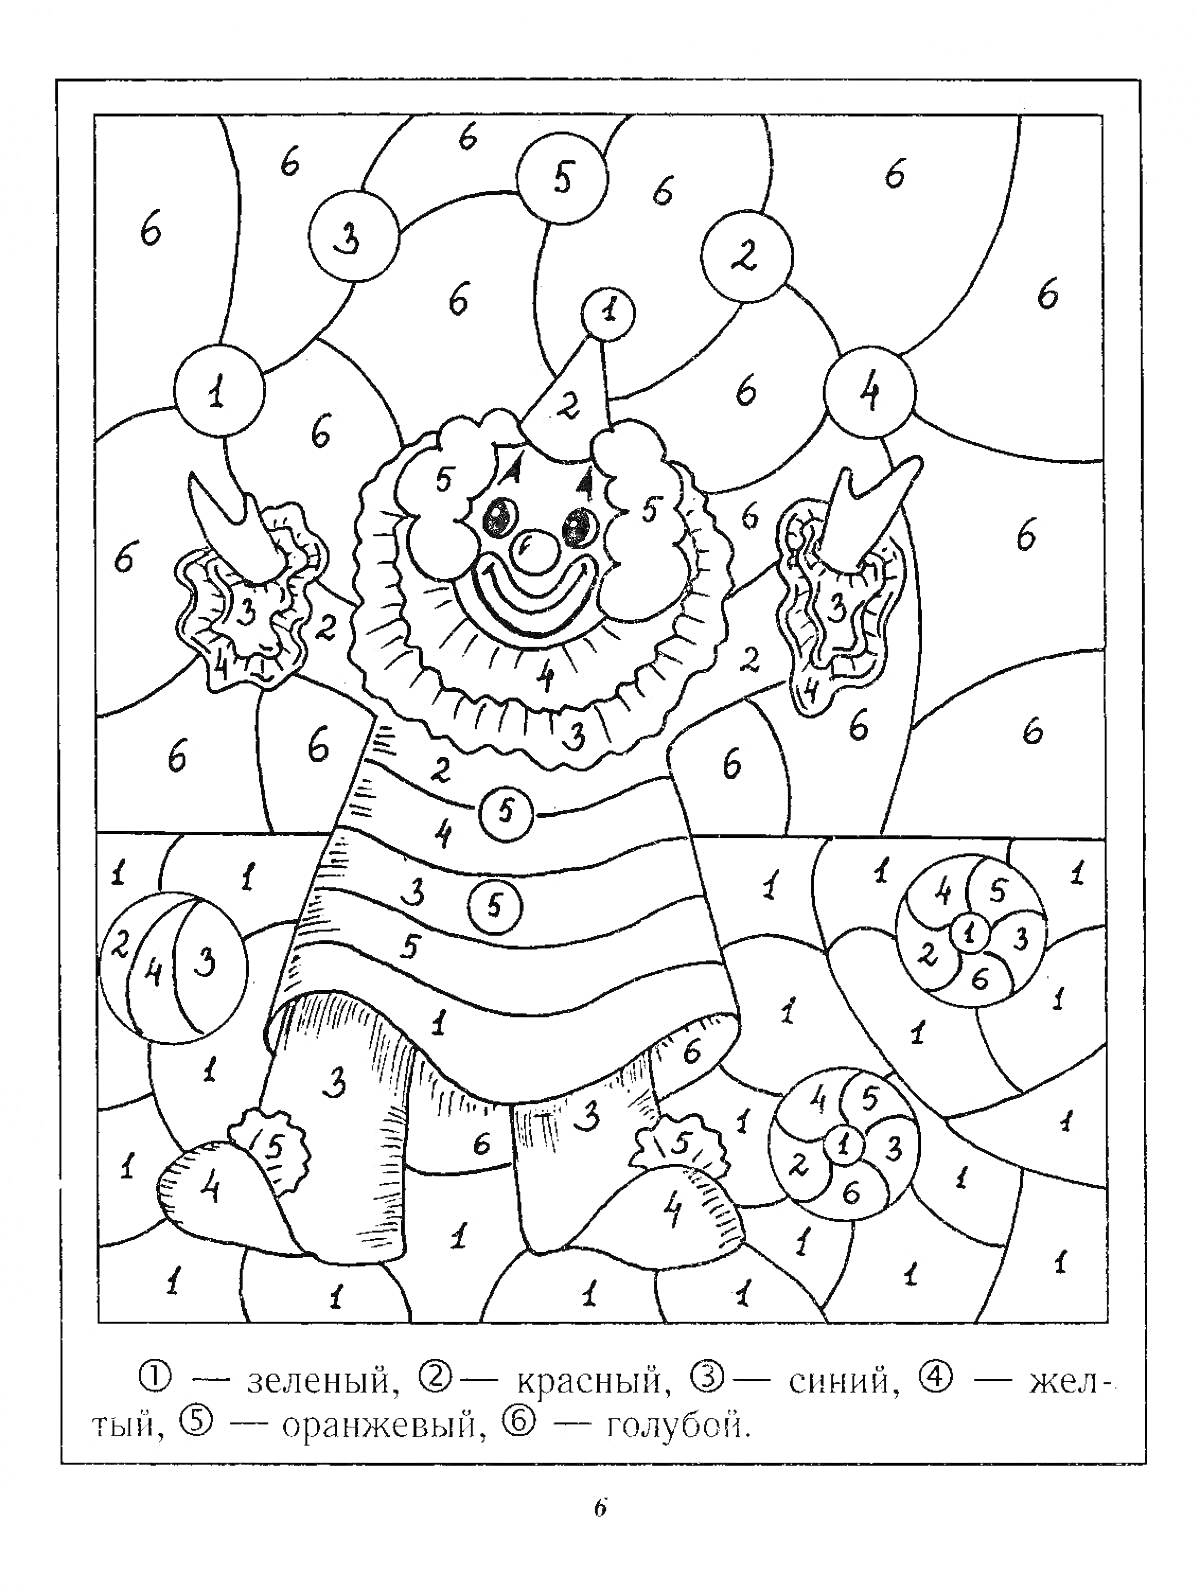 Раскраска Клоун держит два мороженых, на нем полосатое платье, вокруг фон с узорами